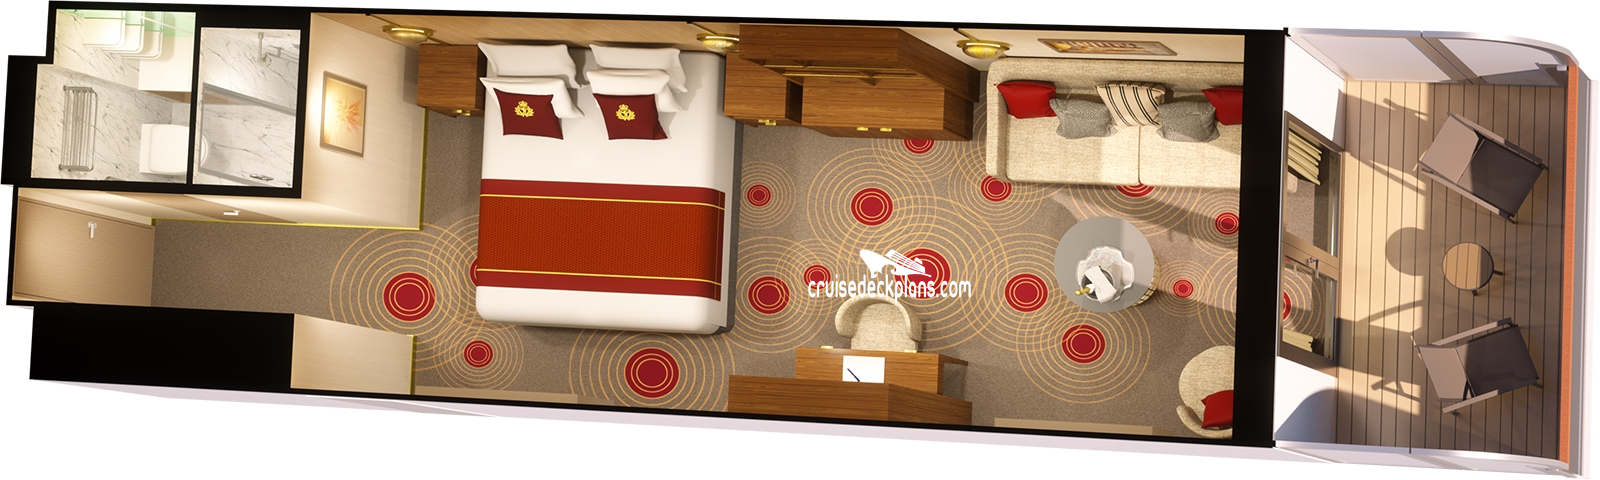 Queen Anne Princess cabin floor plan